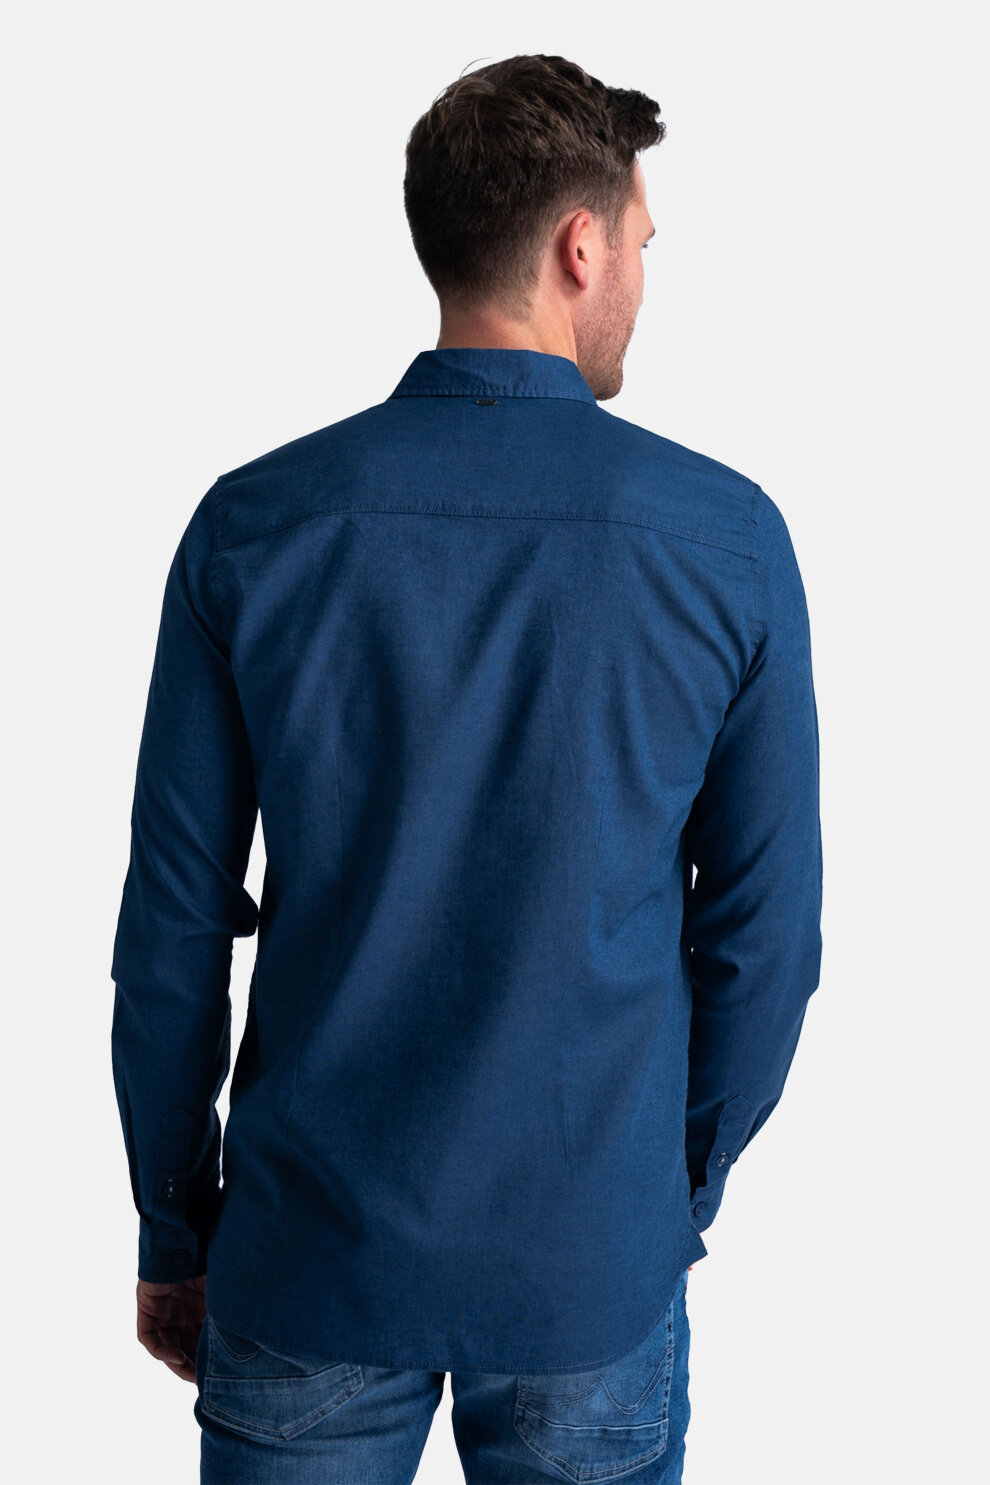 MUŠKARCI - Košulje - Petrol košulja - Dugi rukavi - Plava